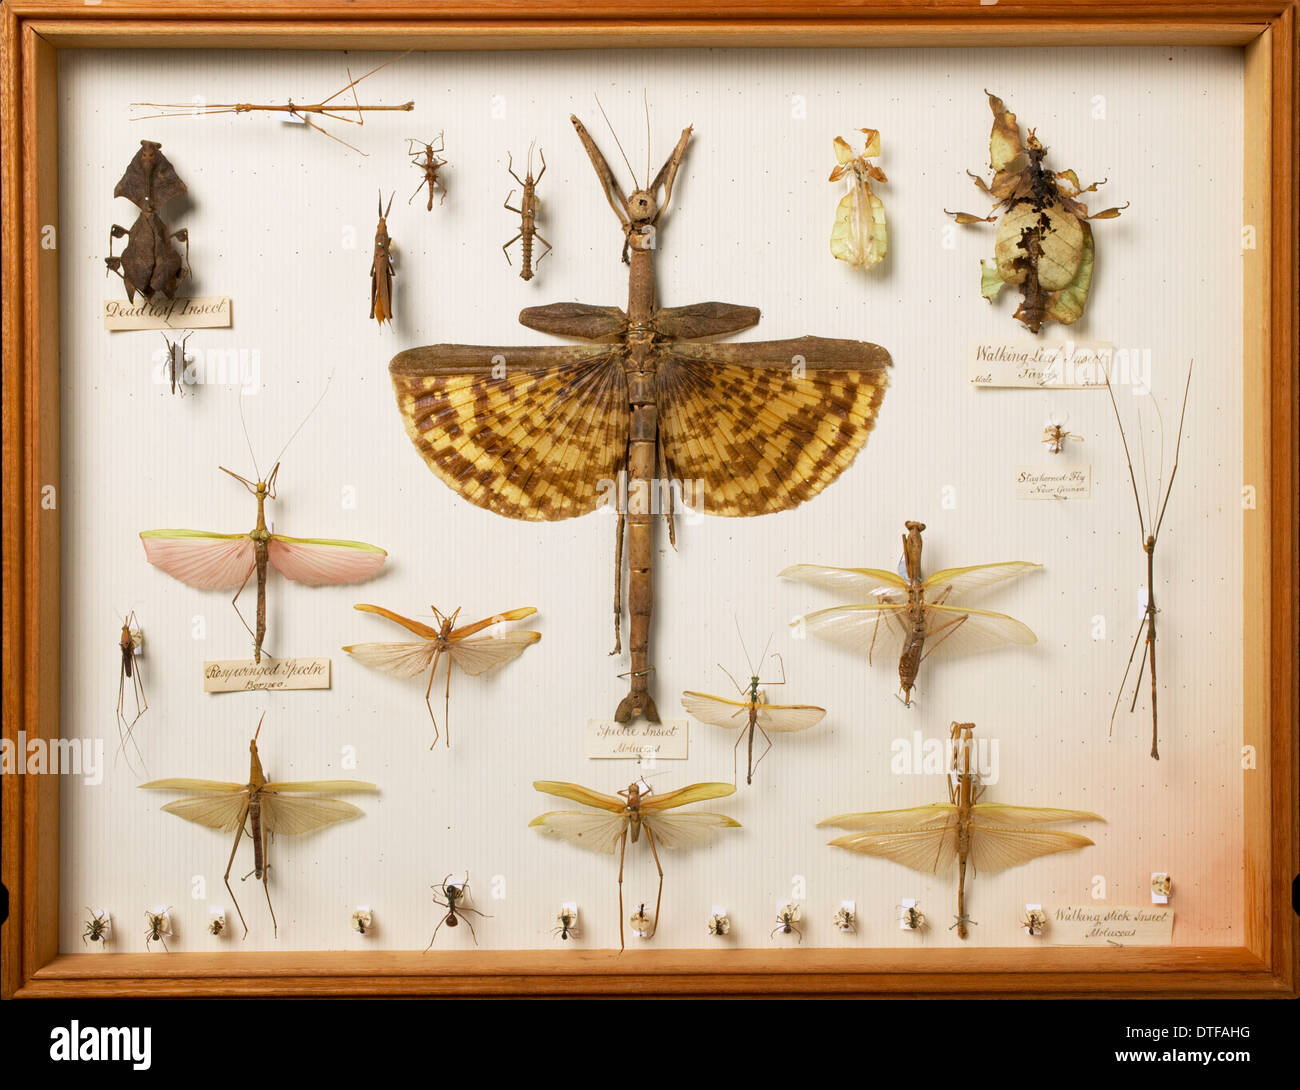 Entomologischen Exemplare aus der Wallace Collection, inc. Hirsch-gehörnten Hirsch-Fly, Phytalmia Cervicornis, Stick und Blatt Insekten Stockfoto